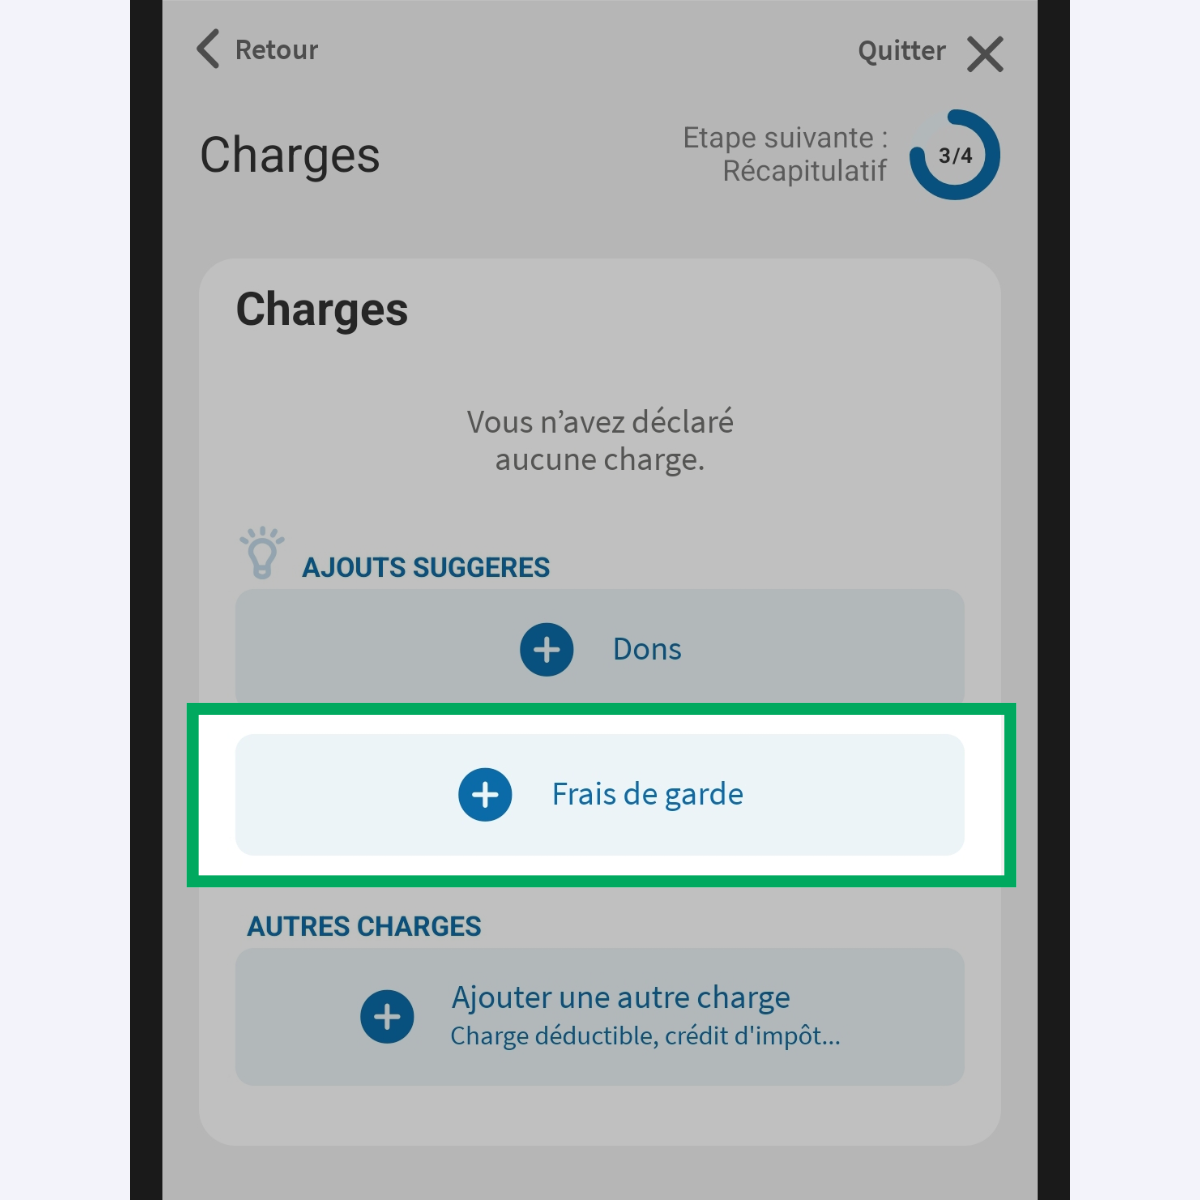 Capture d’écran partielle de l’application présentant
                    la page « Charges » du service « Déclarer mes revenus ». Le bouton d'ajout de charges « Frais de garde » est encadré